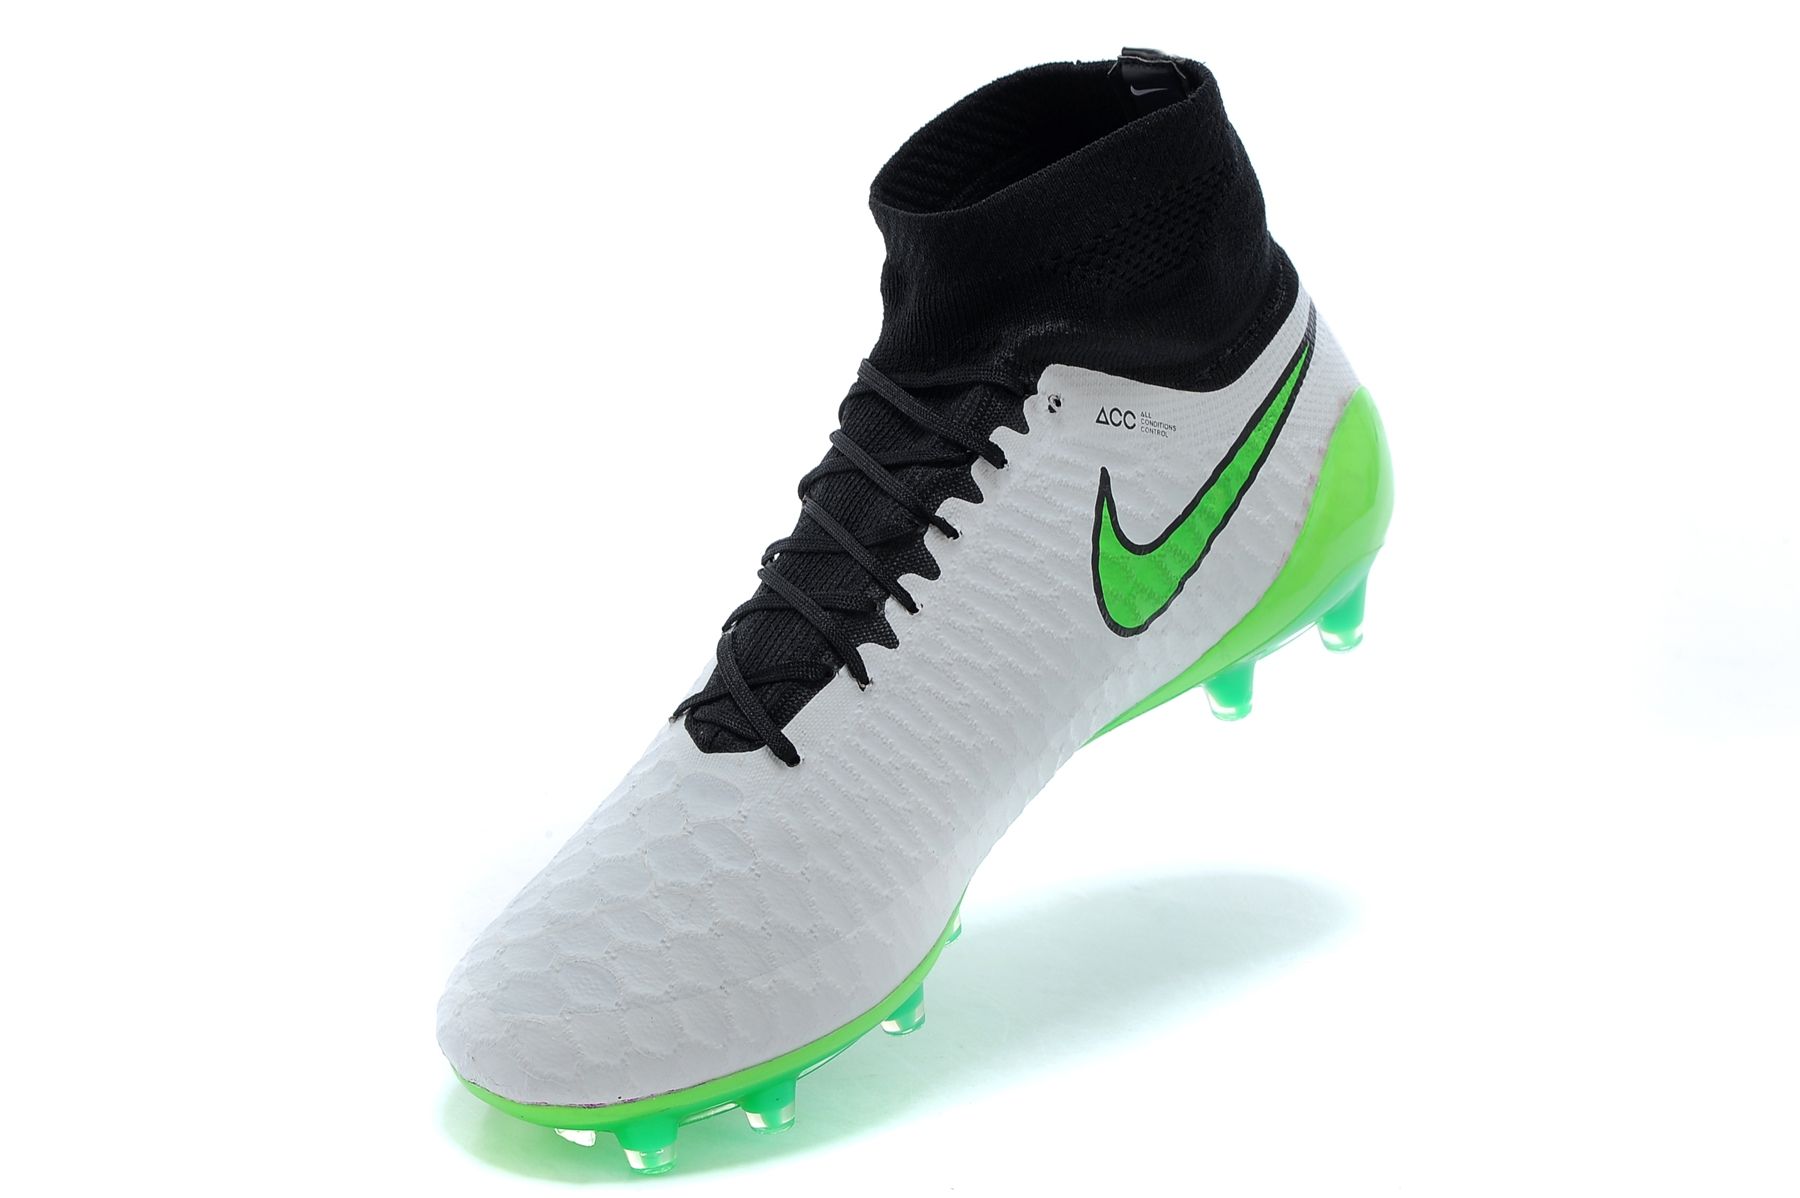 Hombres Nike mejores botas de fútbol Nike Magista Obra FG lobo gris Comprar zapatillas de deporte baratas de China 100% de los zapatos cómodos de fútbol original tacos